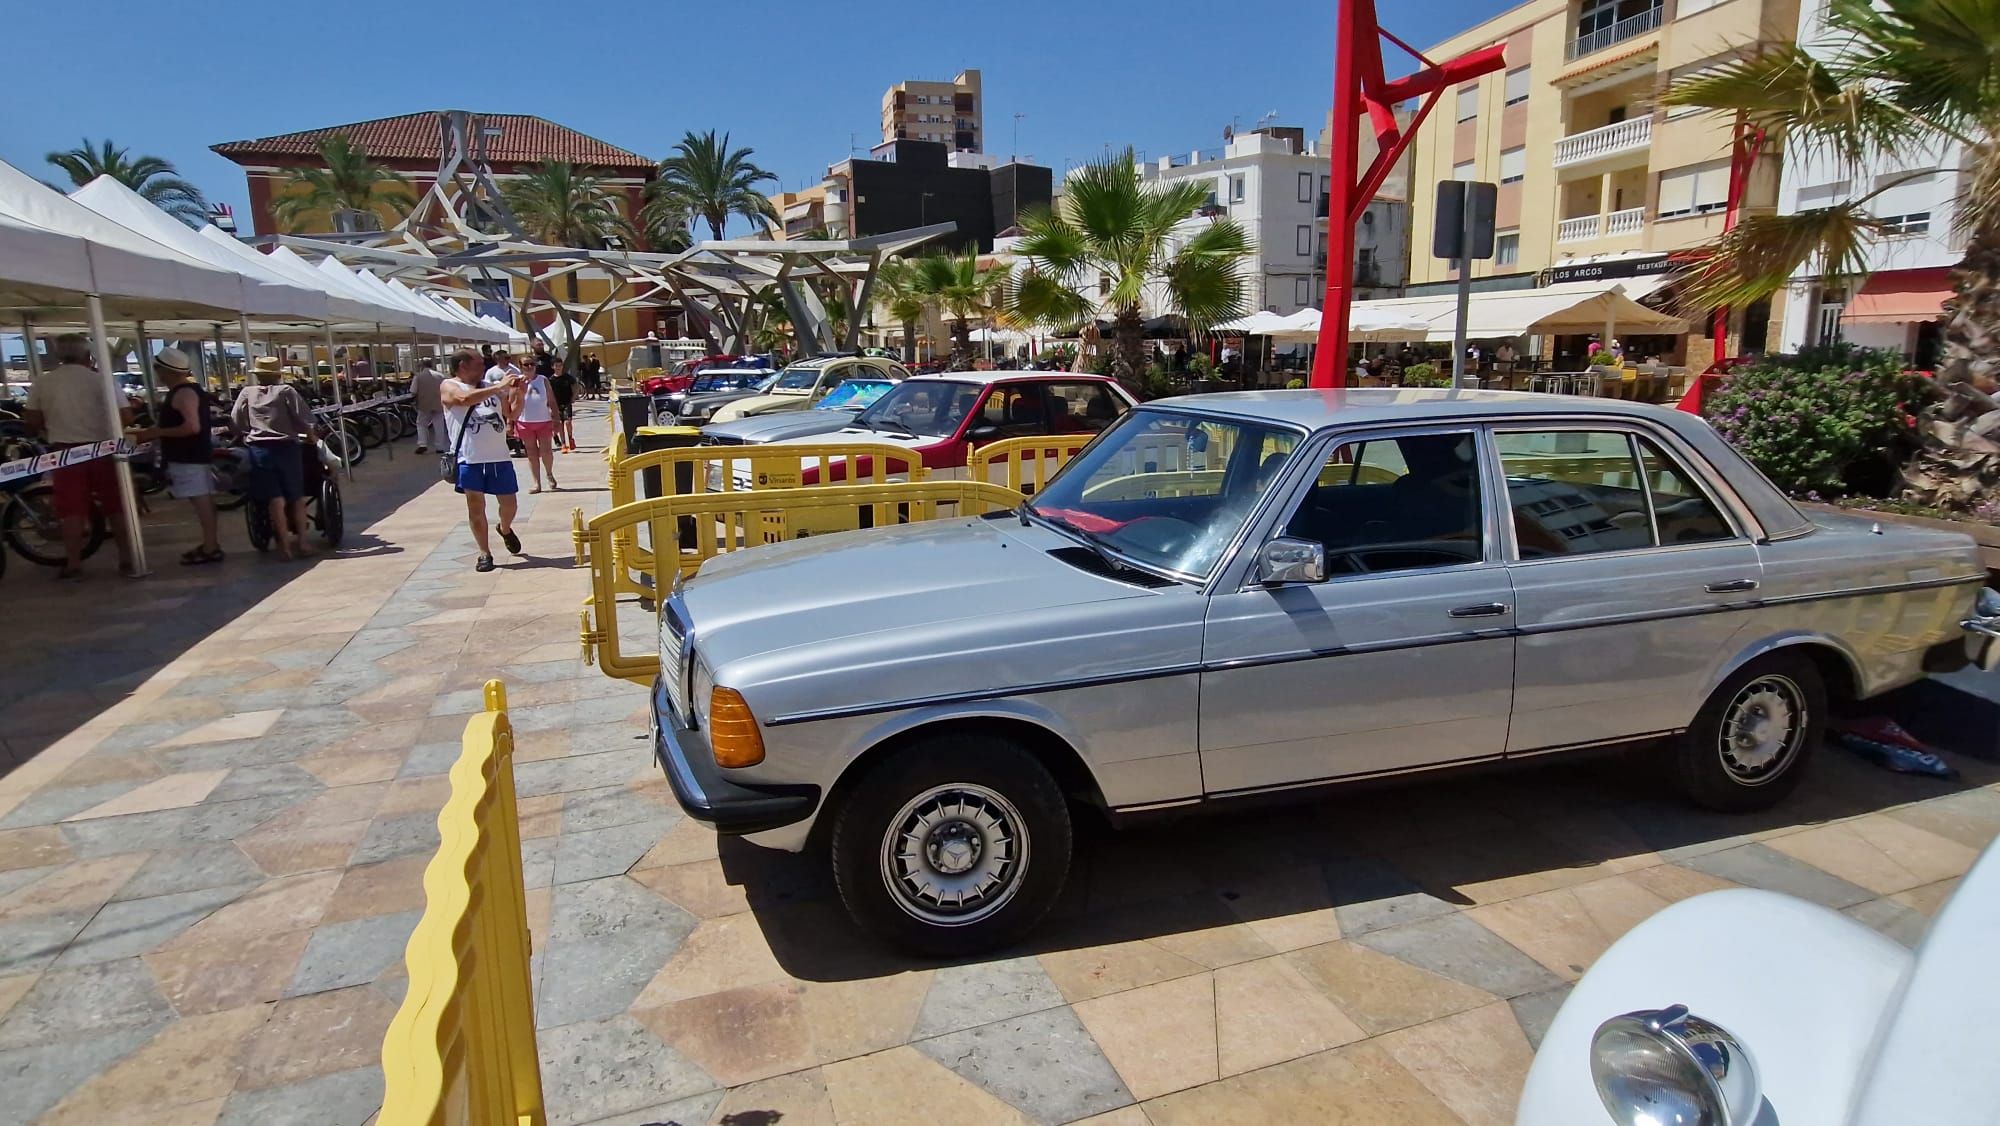 GALERÍA: Las mejores imágenes de la exposición de vehículos de Vinaròs